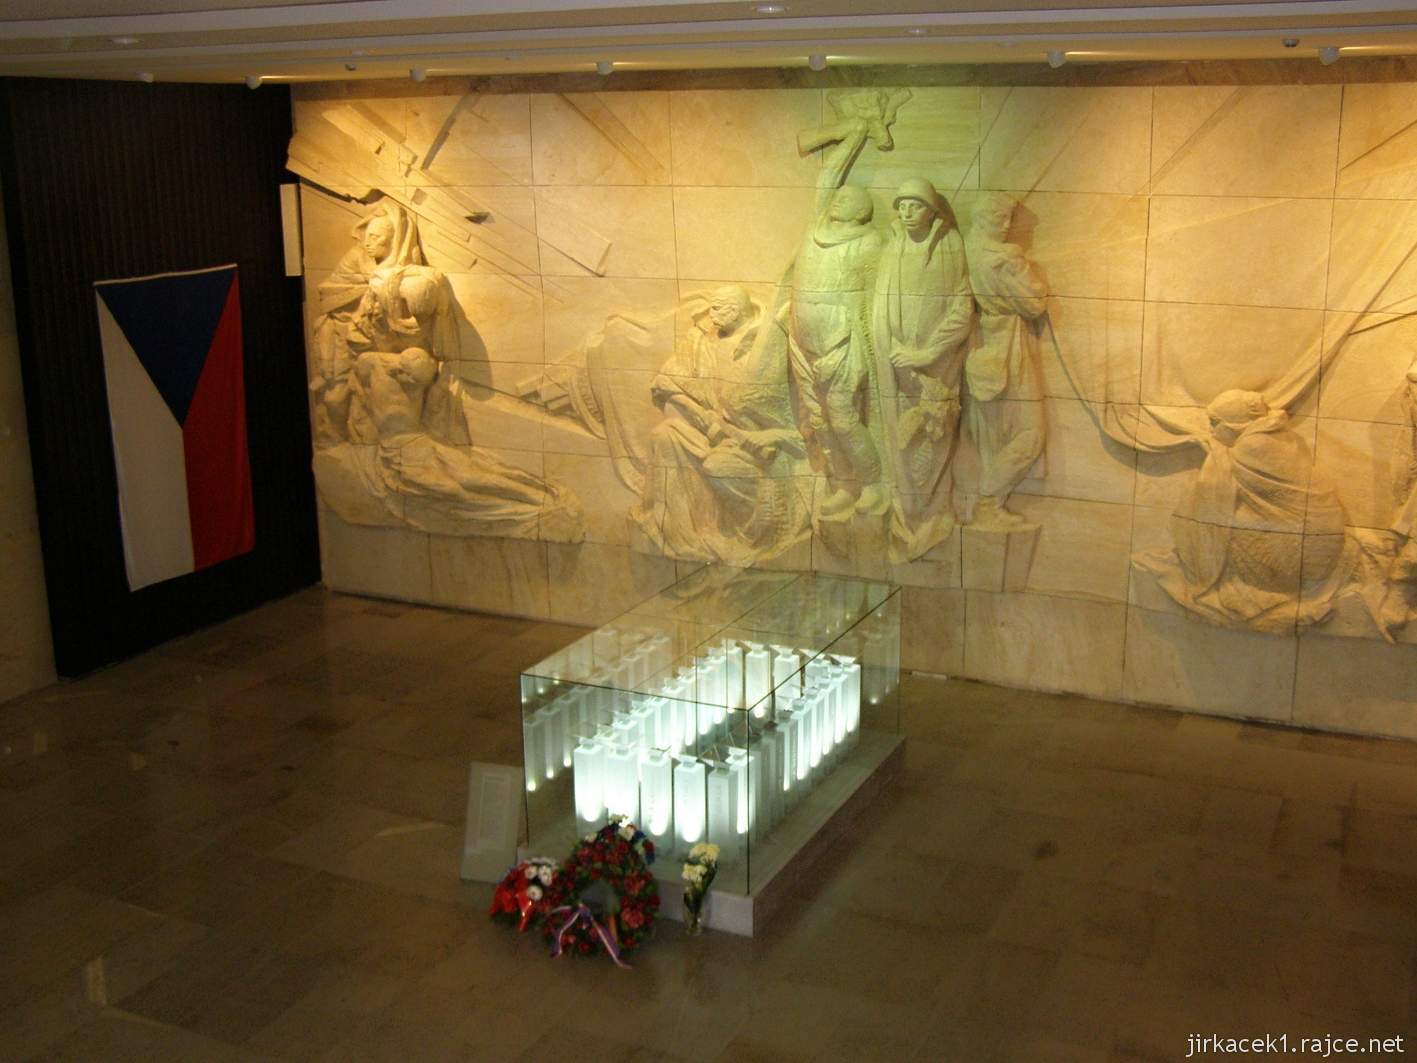 Hrabyně - Národní památník II. světové války 45 - památník - pamětní síň, v níž je centrálním objektem skleněný sarkofág s prstí z bojišť 2. světové války, koncentračních táborů a dalších míst utrpení